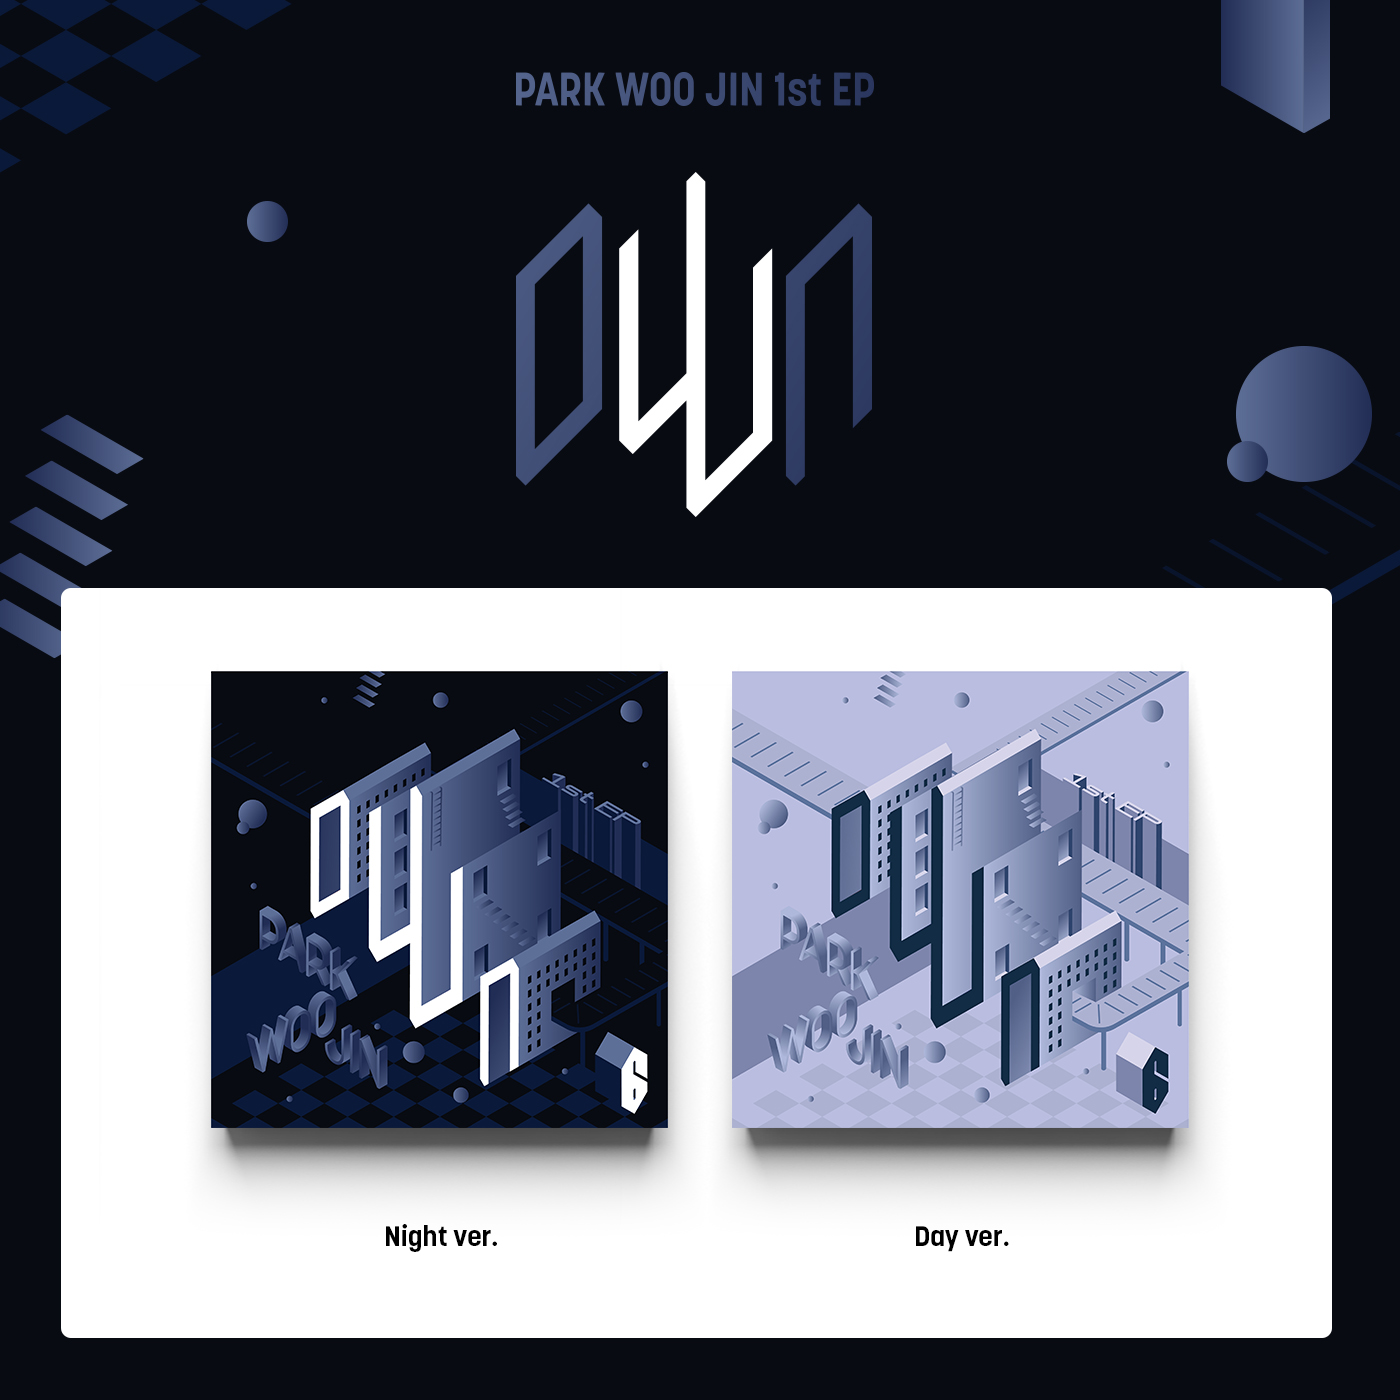 [全款 裸专] PARK WOO JIN (AB6IX) - 1st EP [oWn]_朴佑镇虎牙研究所_TigerToothLab